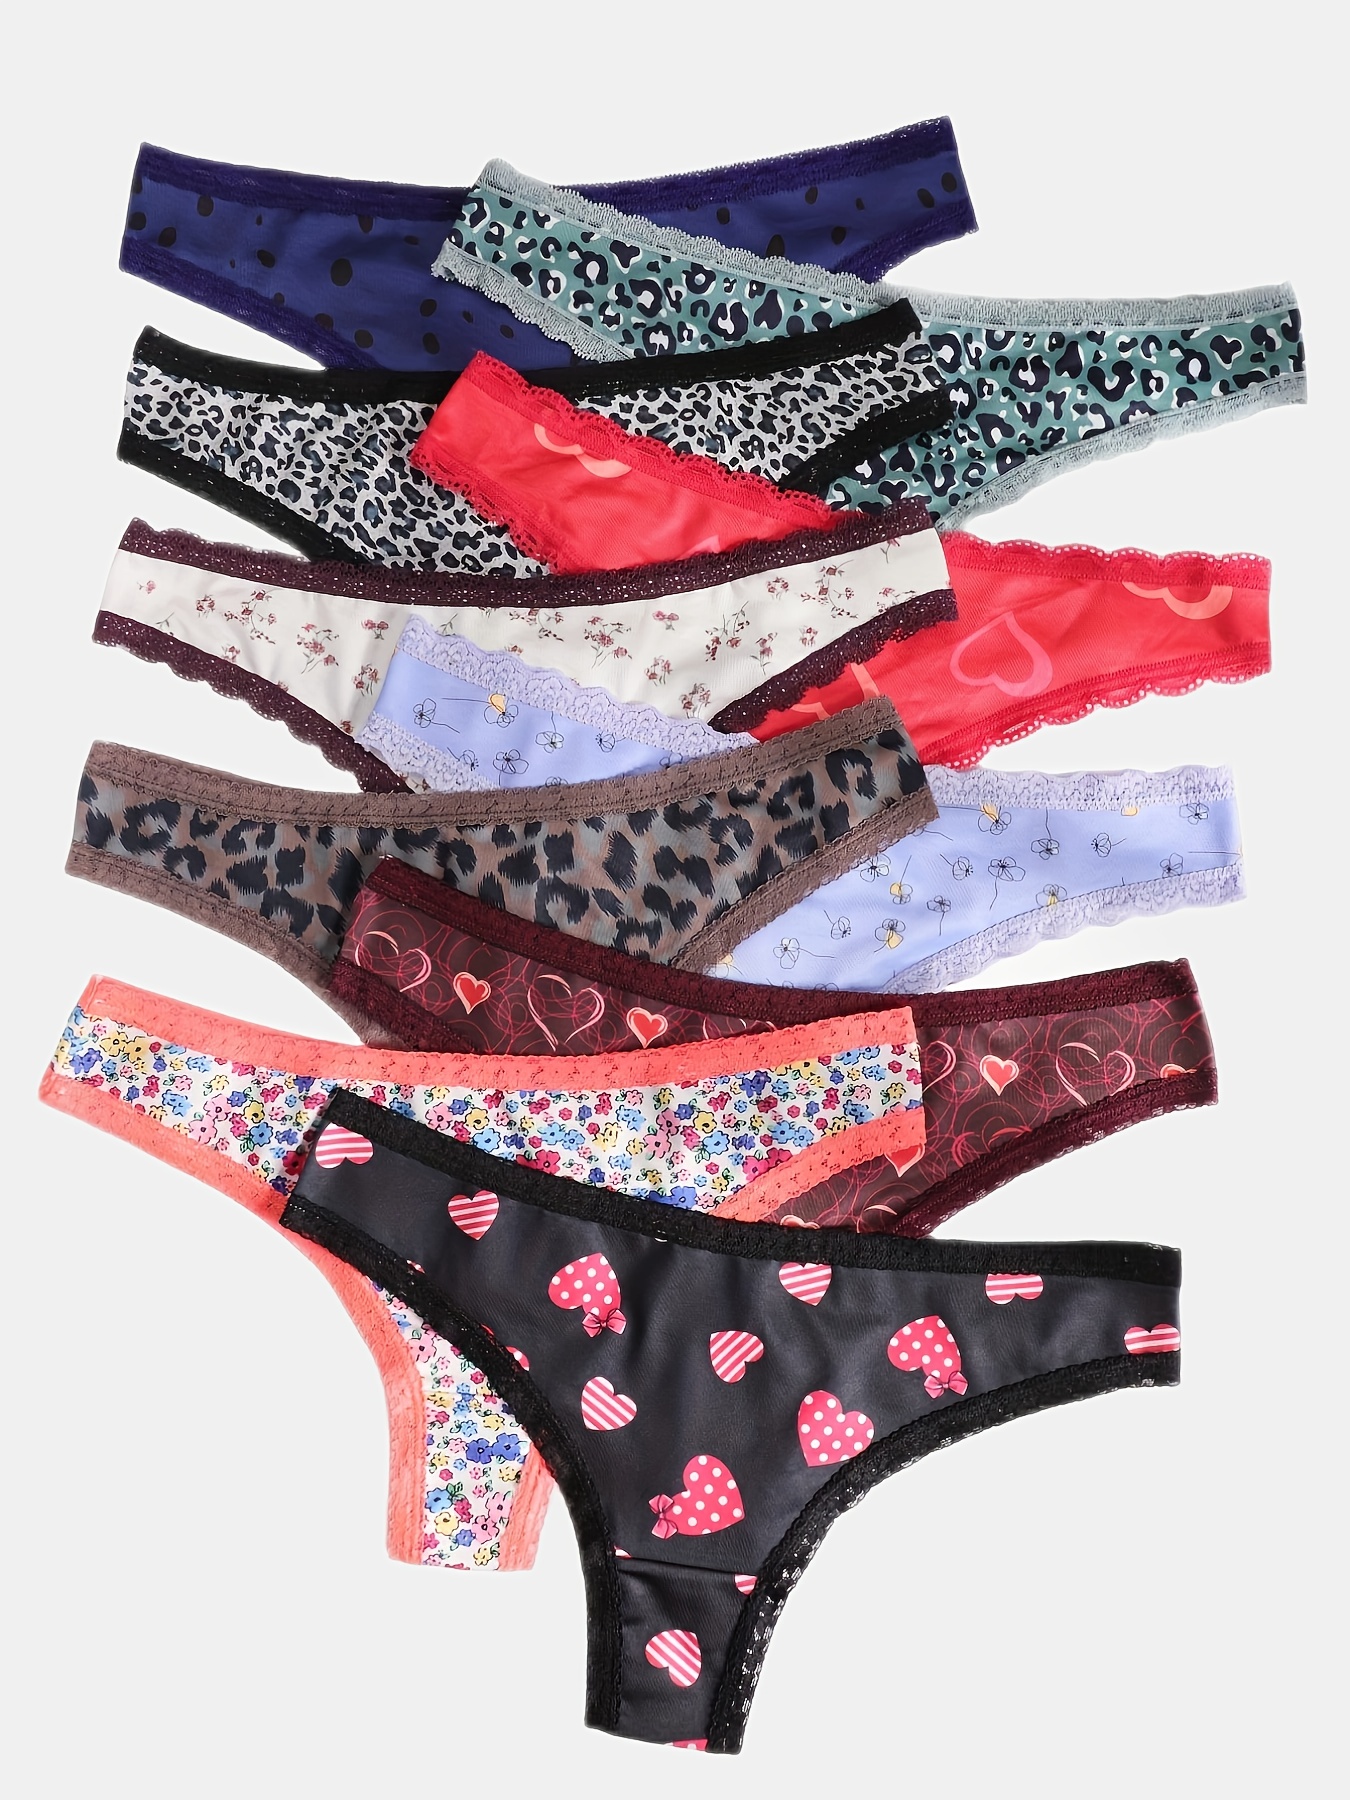 5pcs Heart & Floral Print Thongs, Cute Comfy Lace Trim Intimates Panties,  Women's Lingerie & Underwear